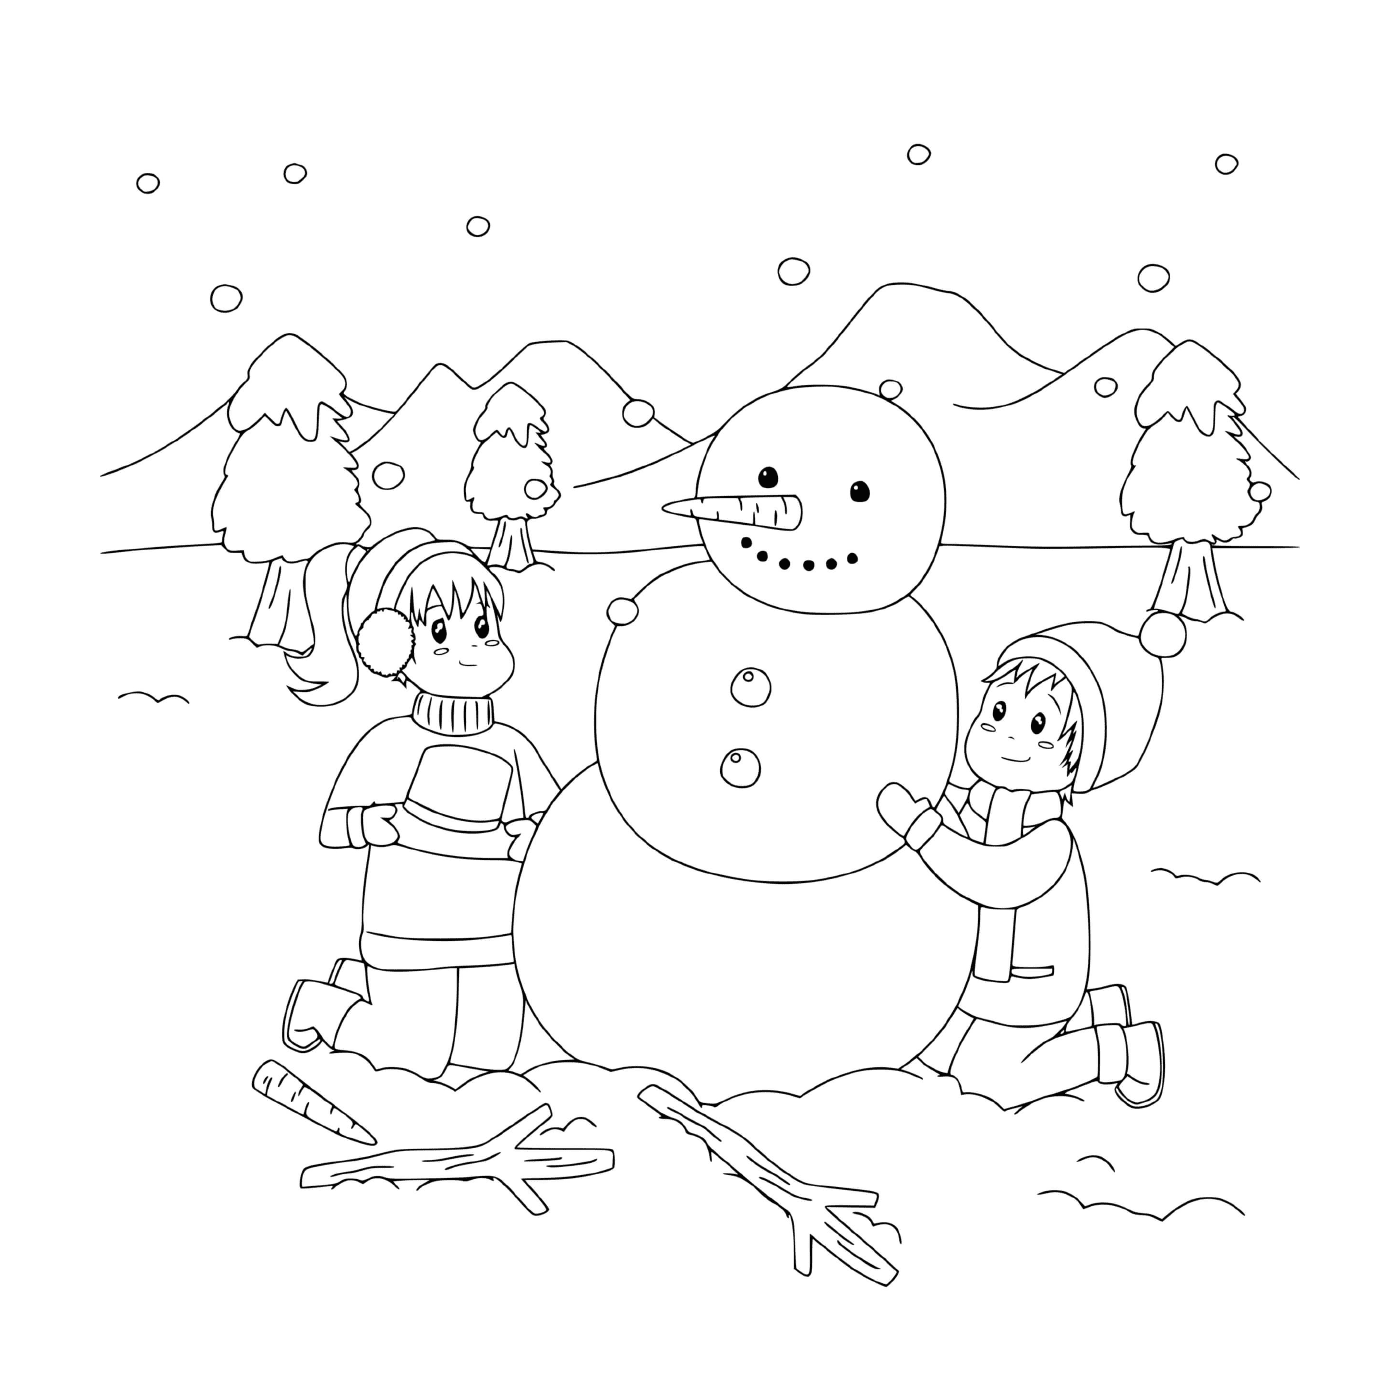  Niños construyendo un muñeco de nieve en un paisaje nevado 